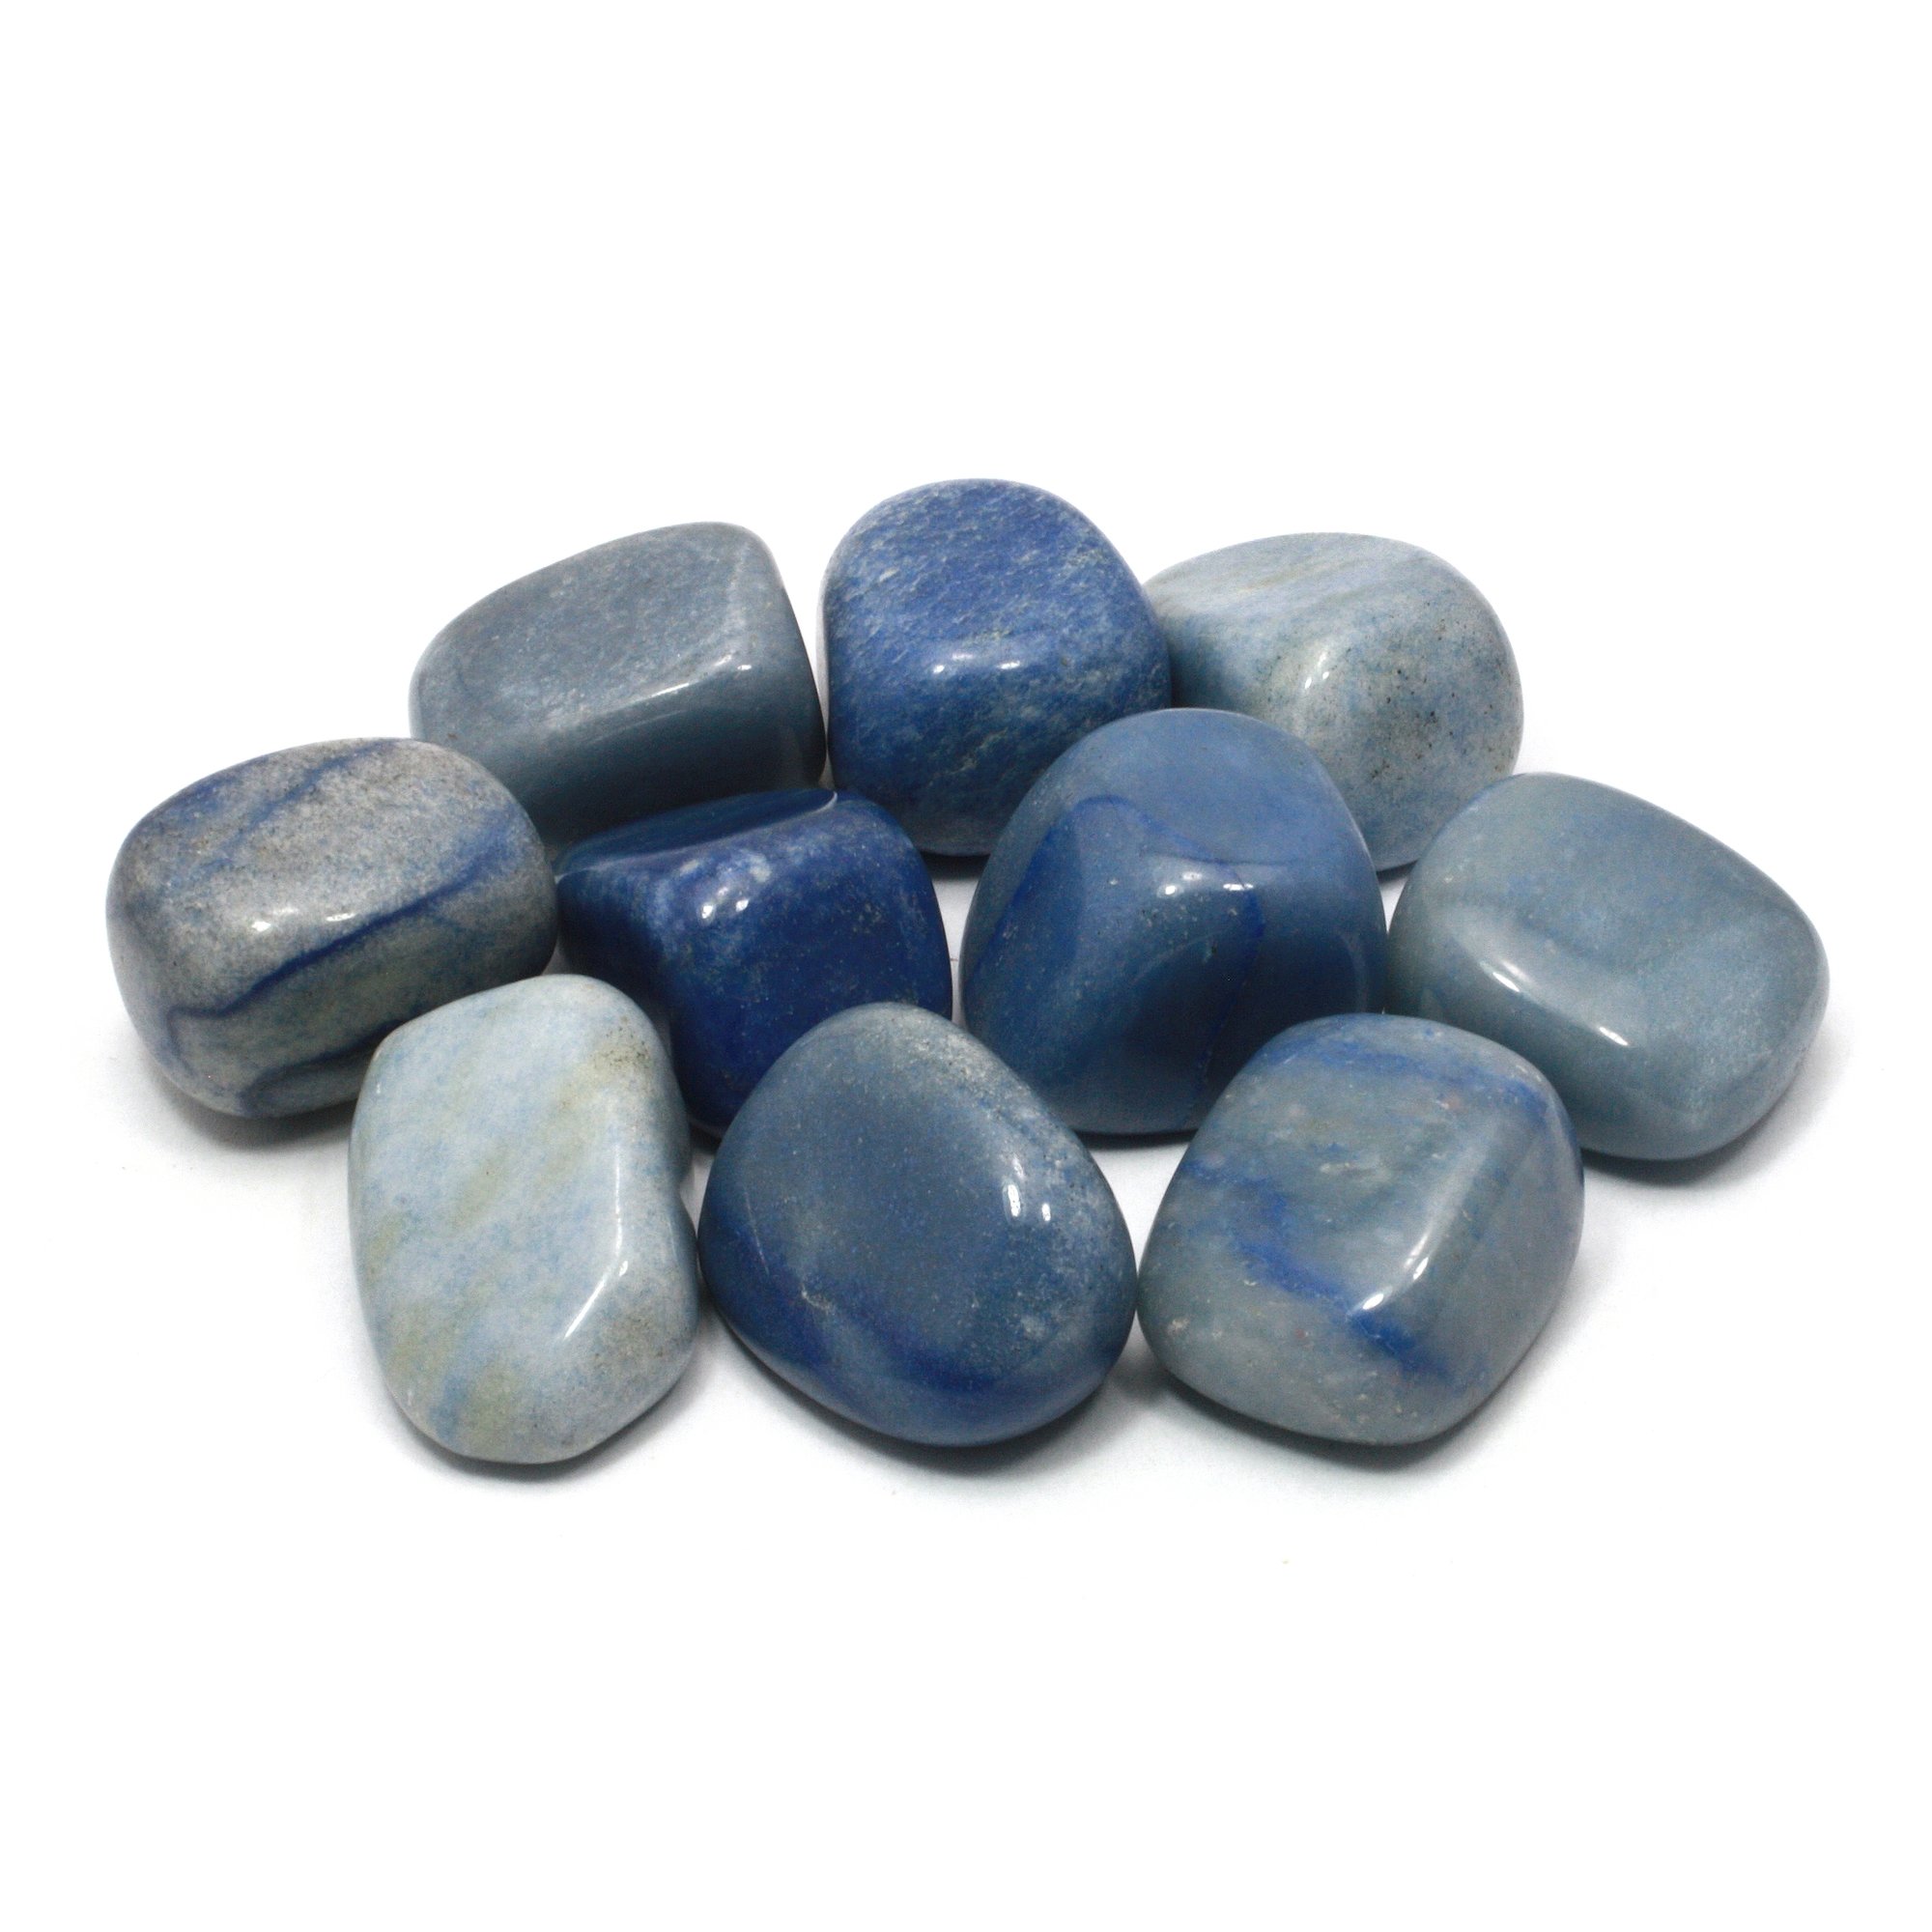 Blue Quartz Tumble Stone (20-25mm)